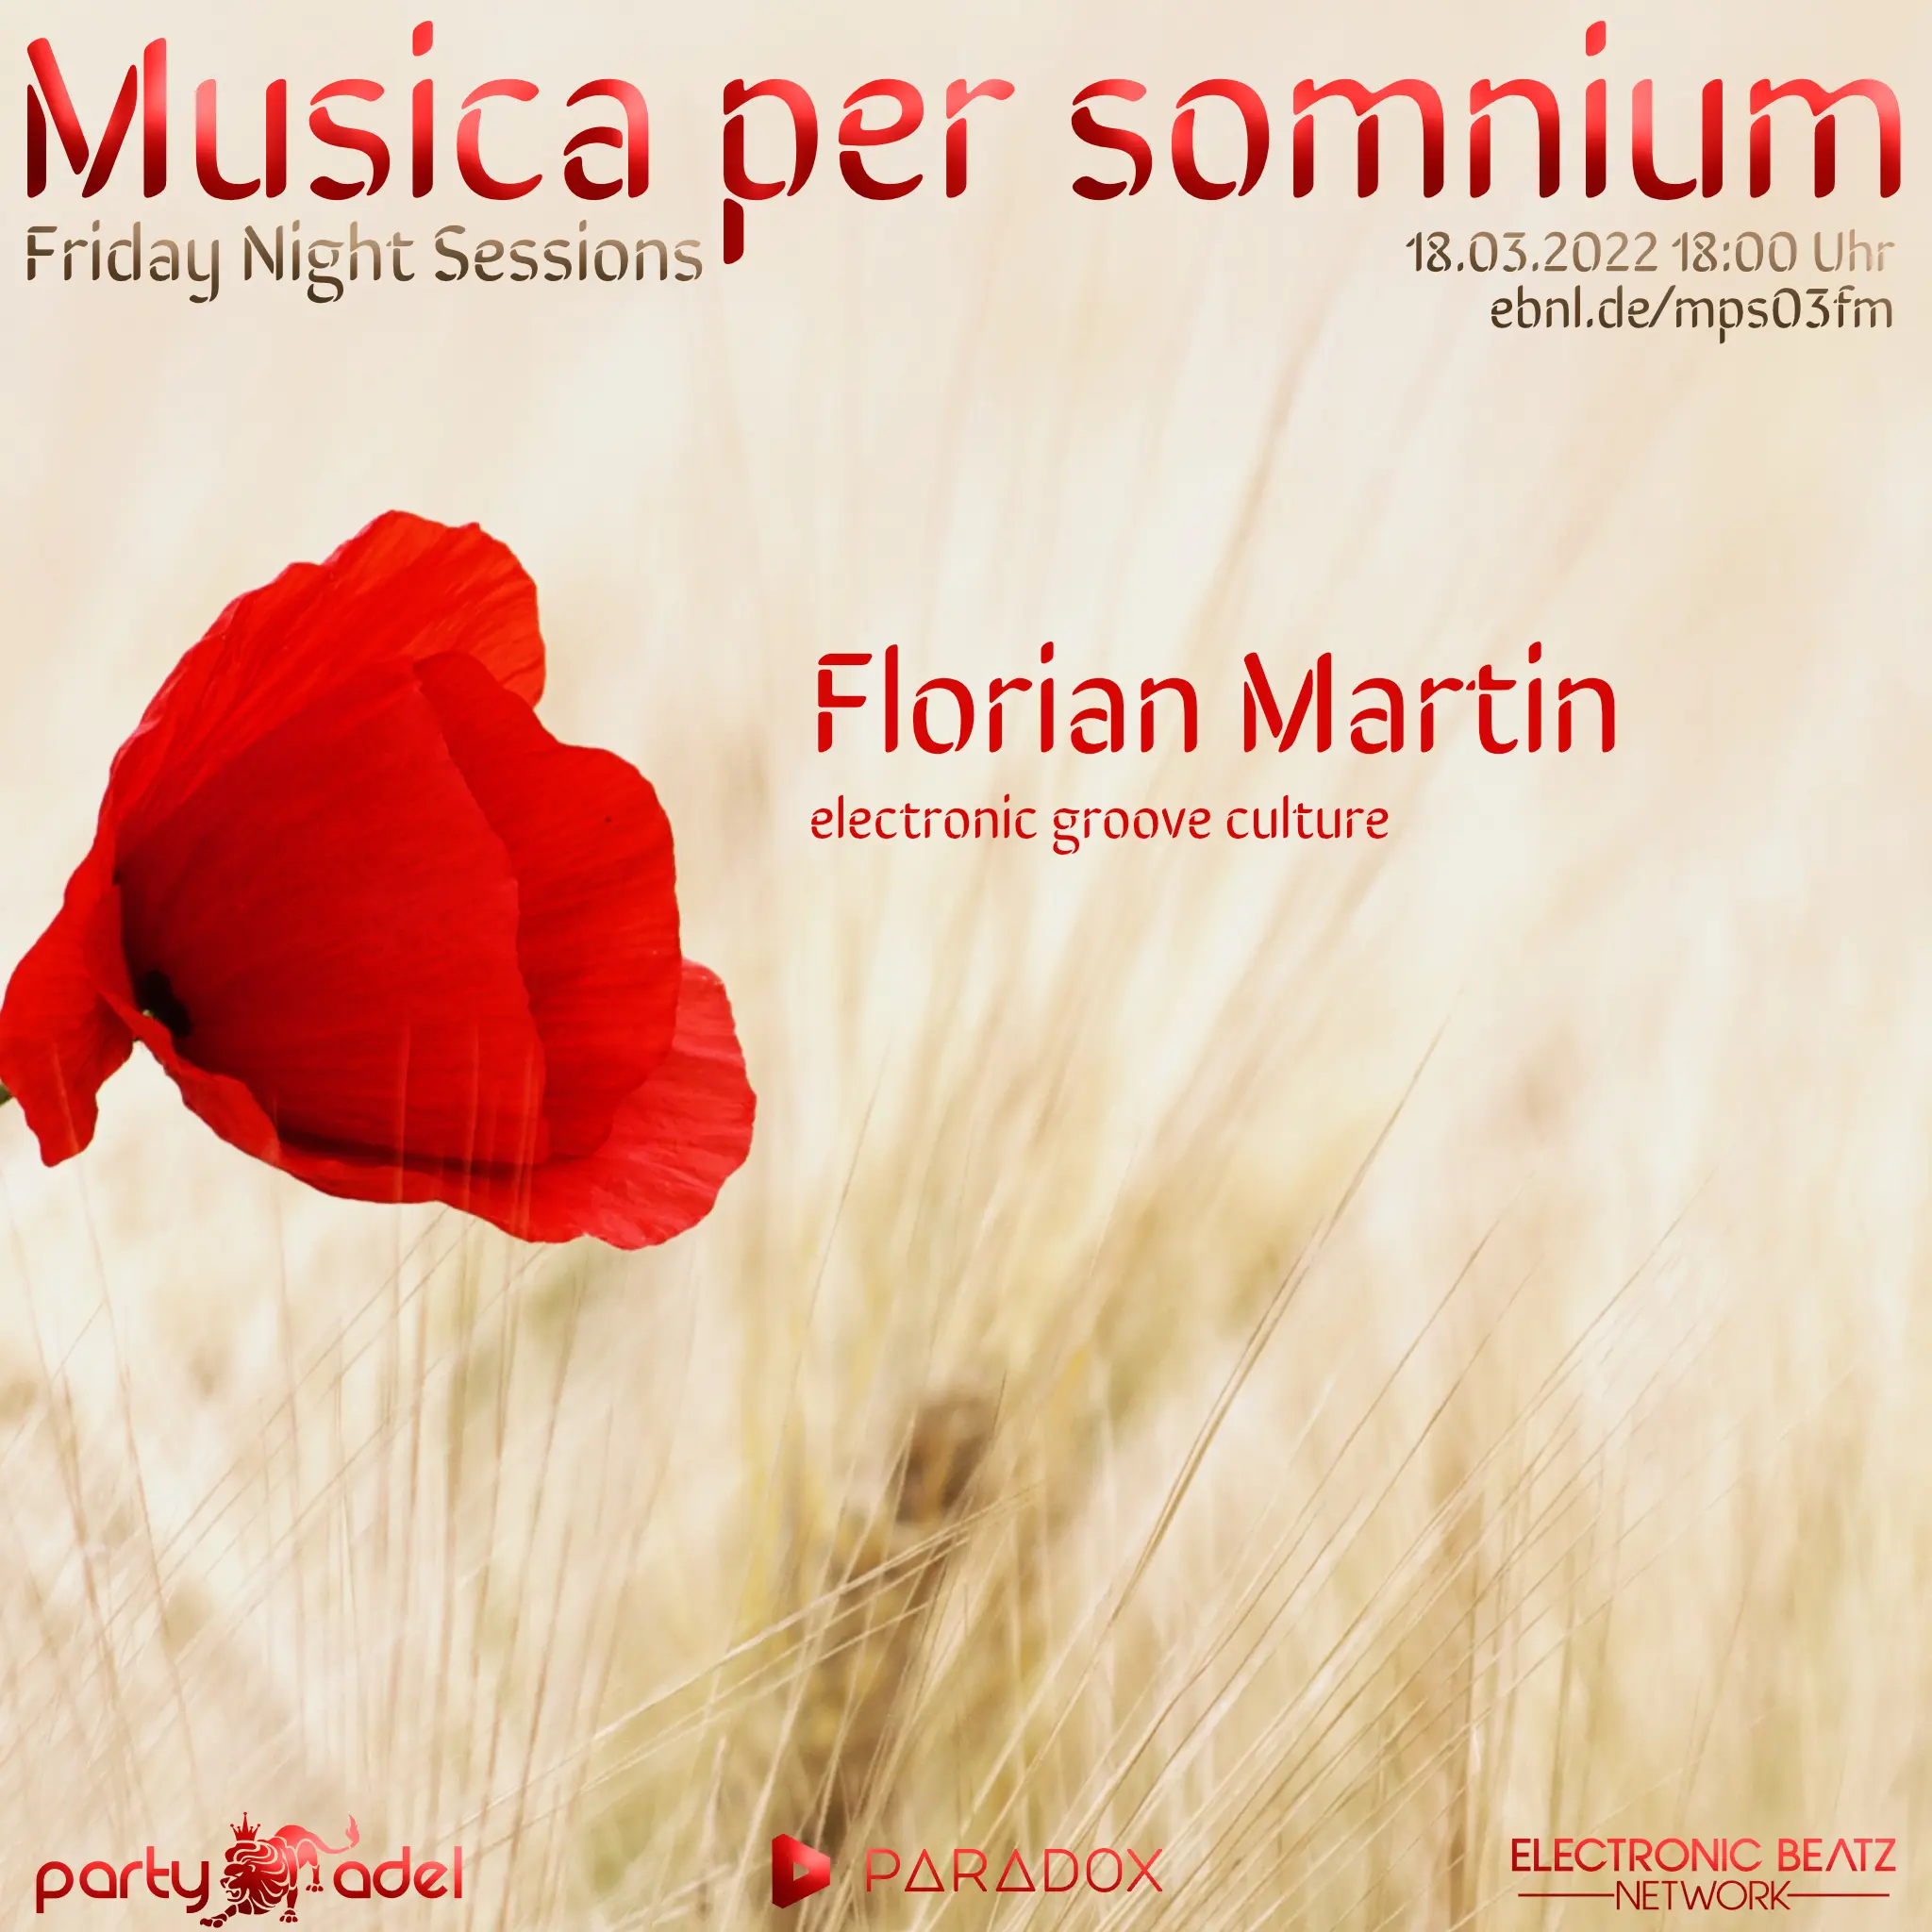 Florian Martin @ Musica per somnium (18.03.2022)